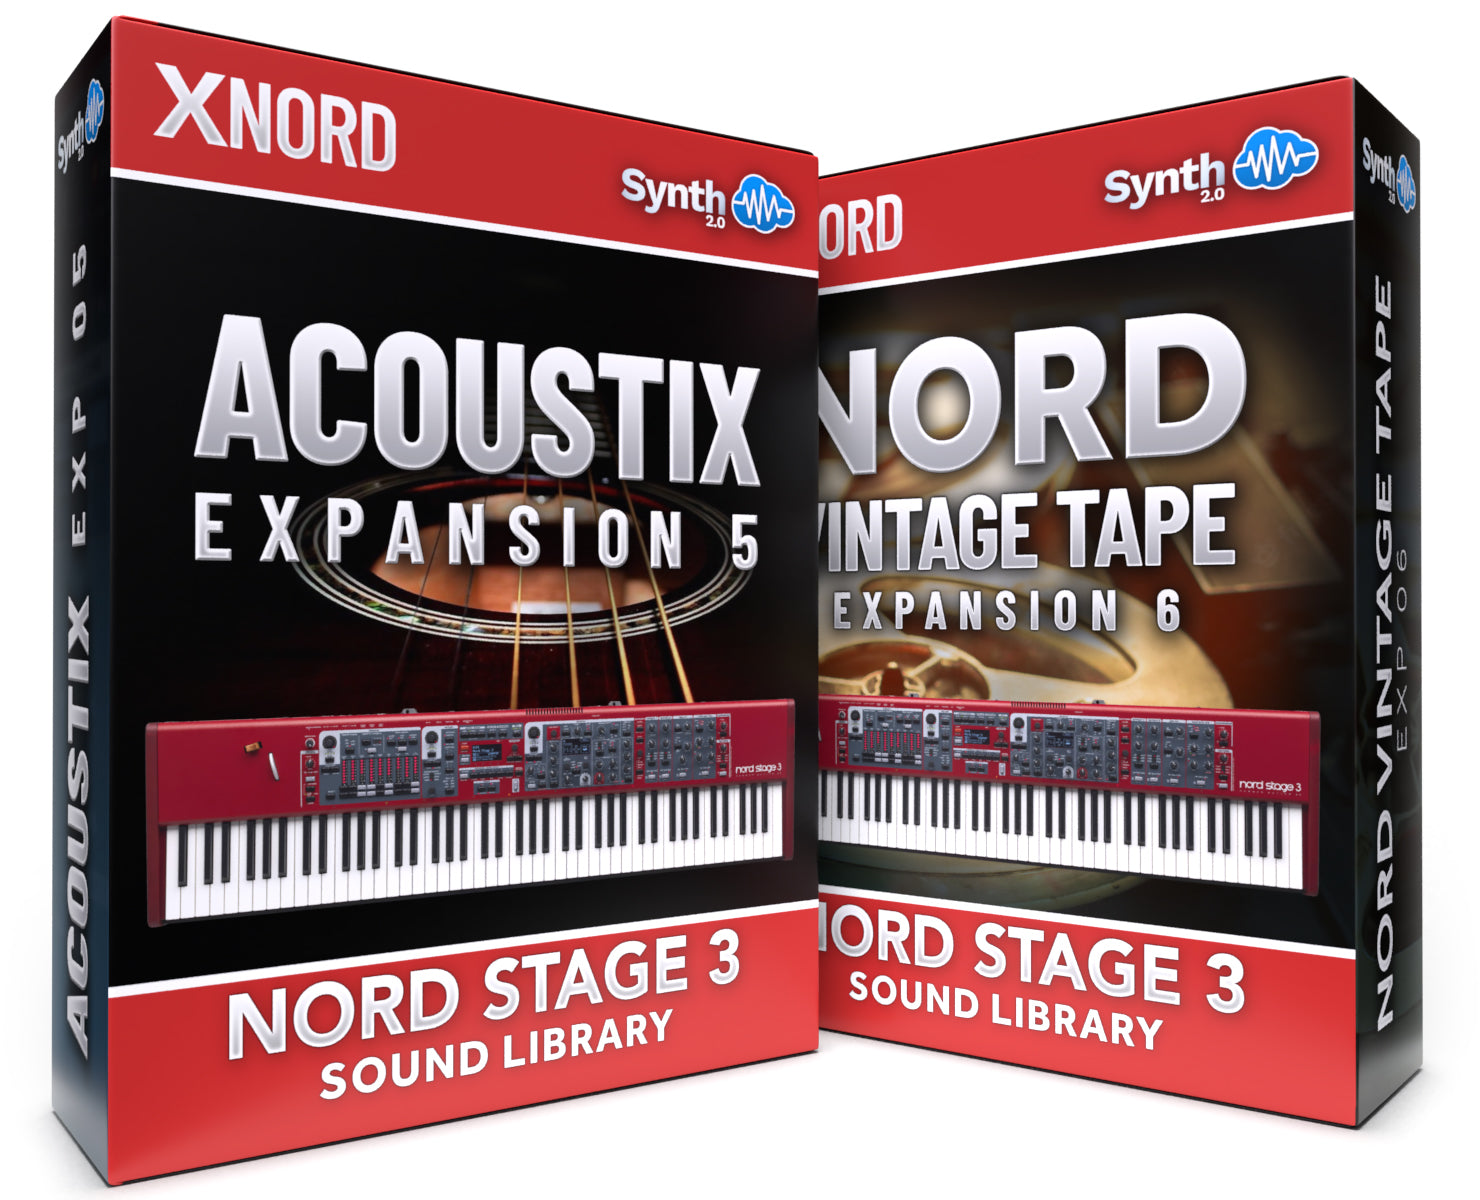 DVK041 - ( Bundle ) - AcoustiX Samples Expansion + Vintage Tape Expansion - Nord Stage 3